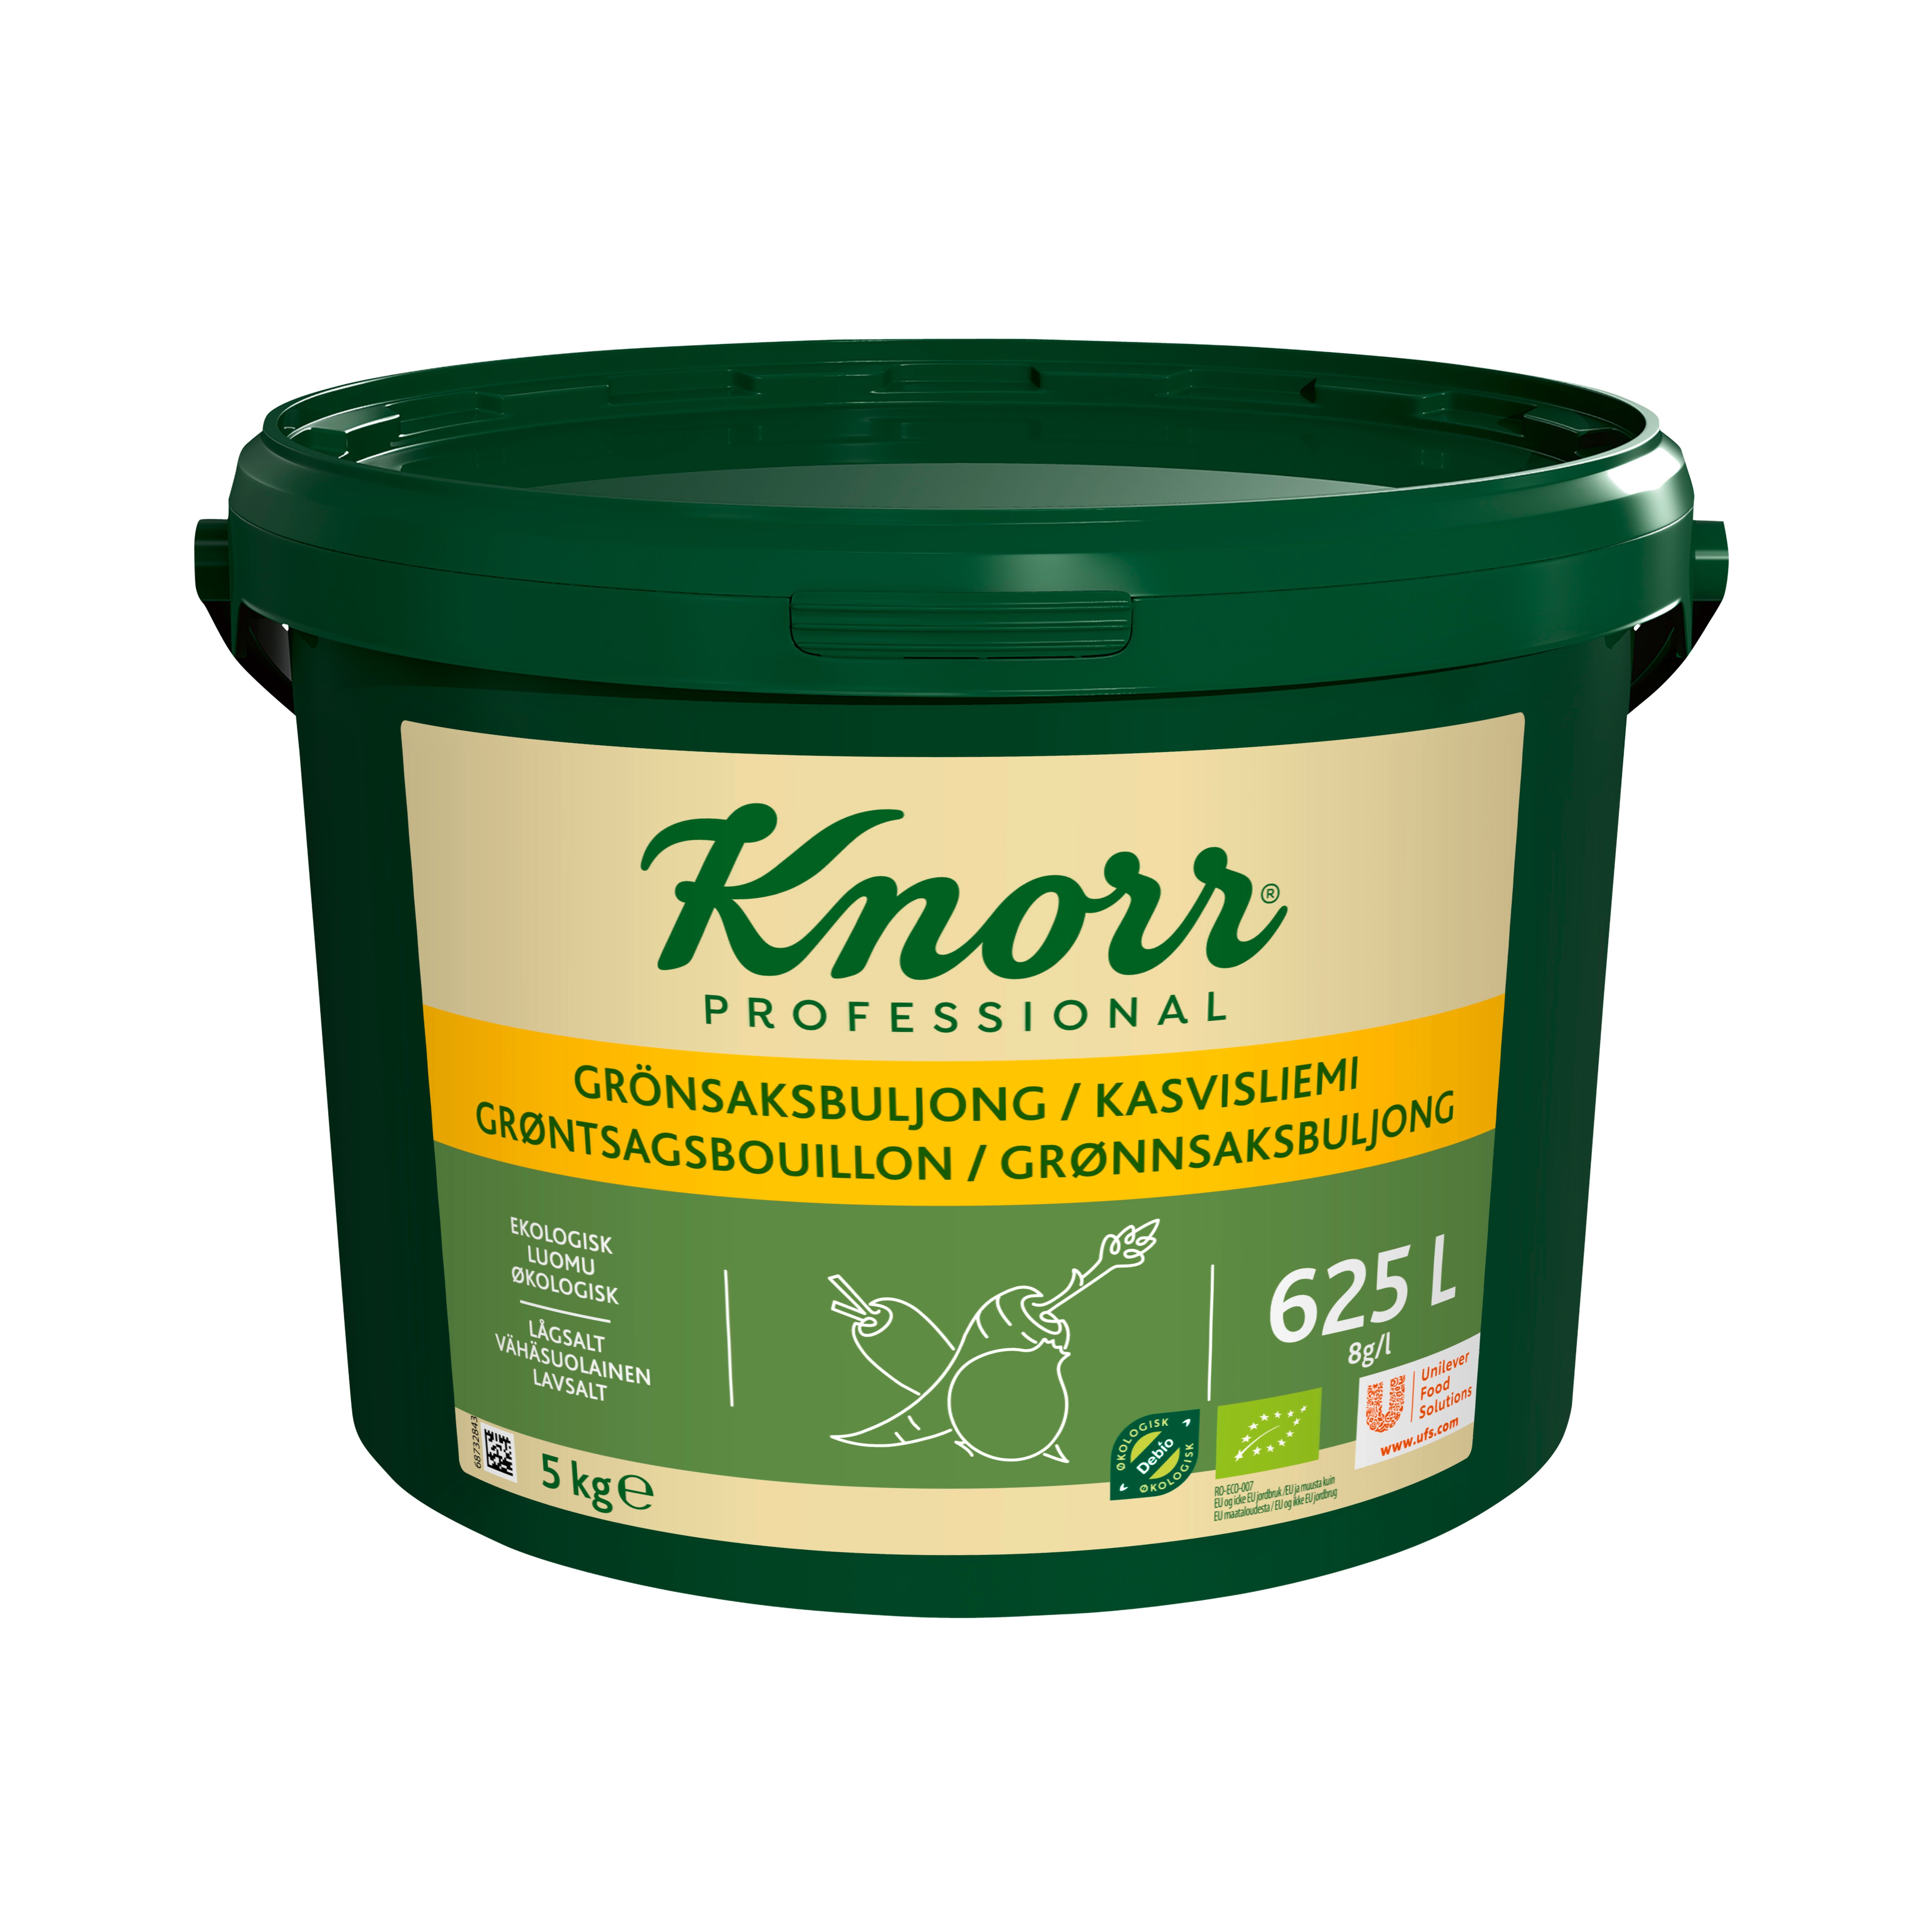 Knorr Grönsaksbuljong Ekologisk, pulver 1 x 5kg - 